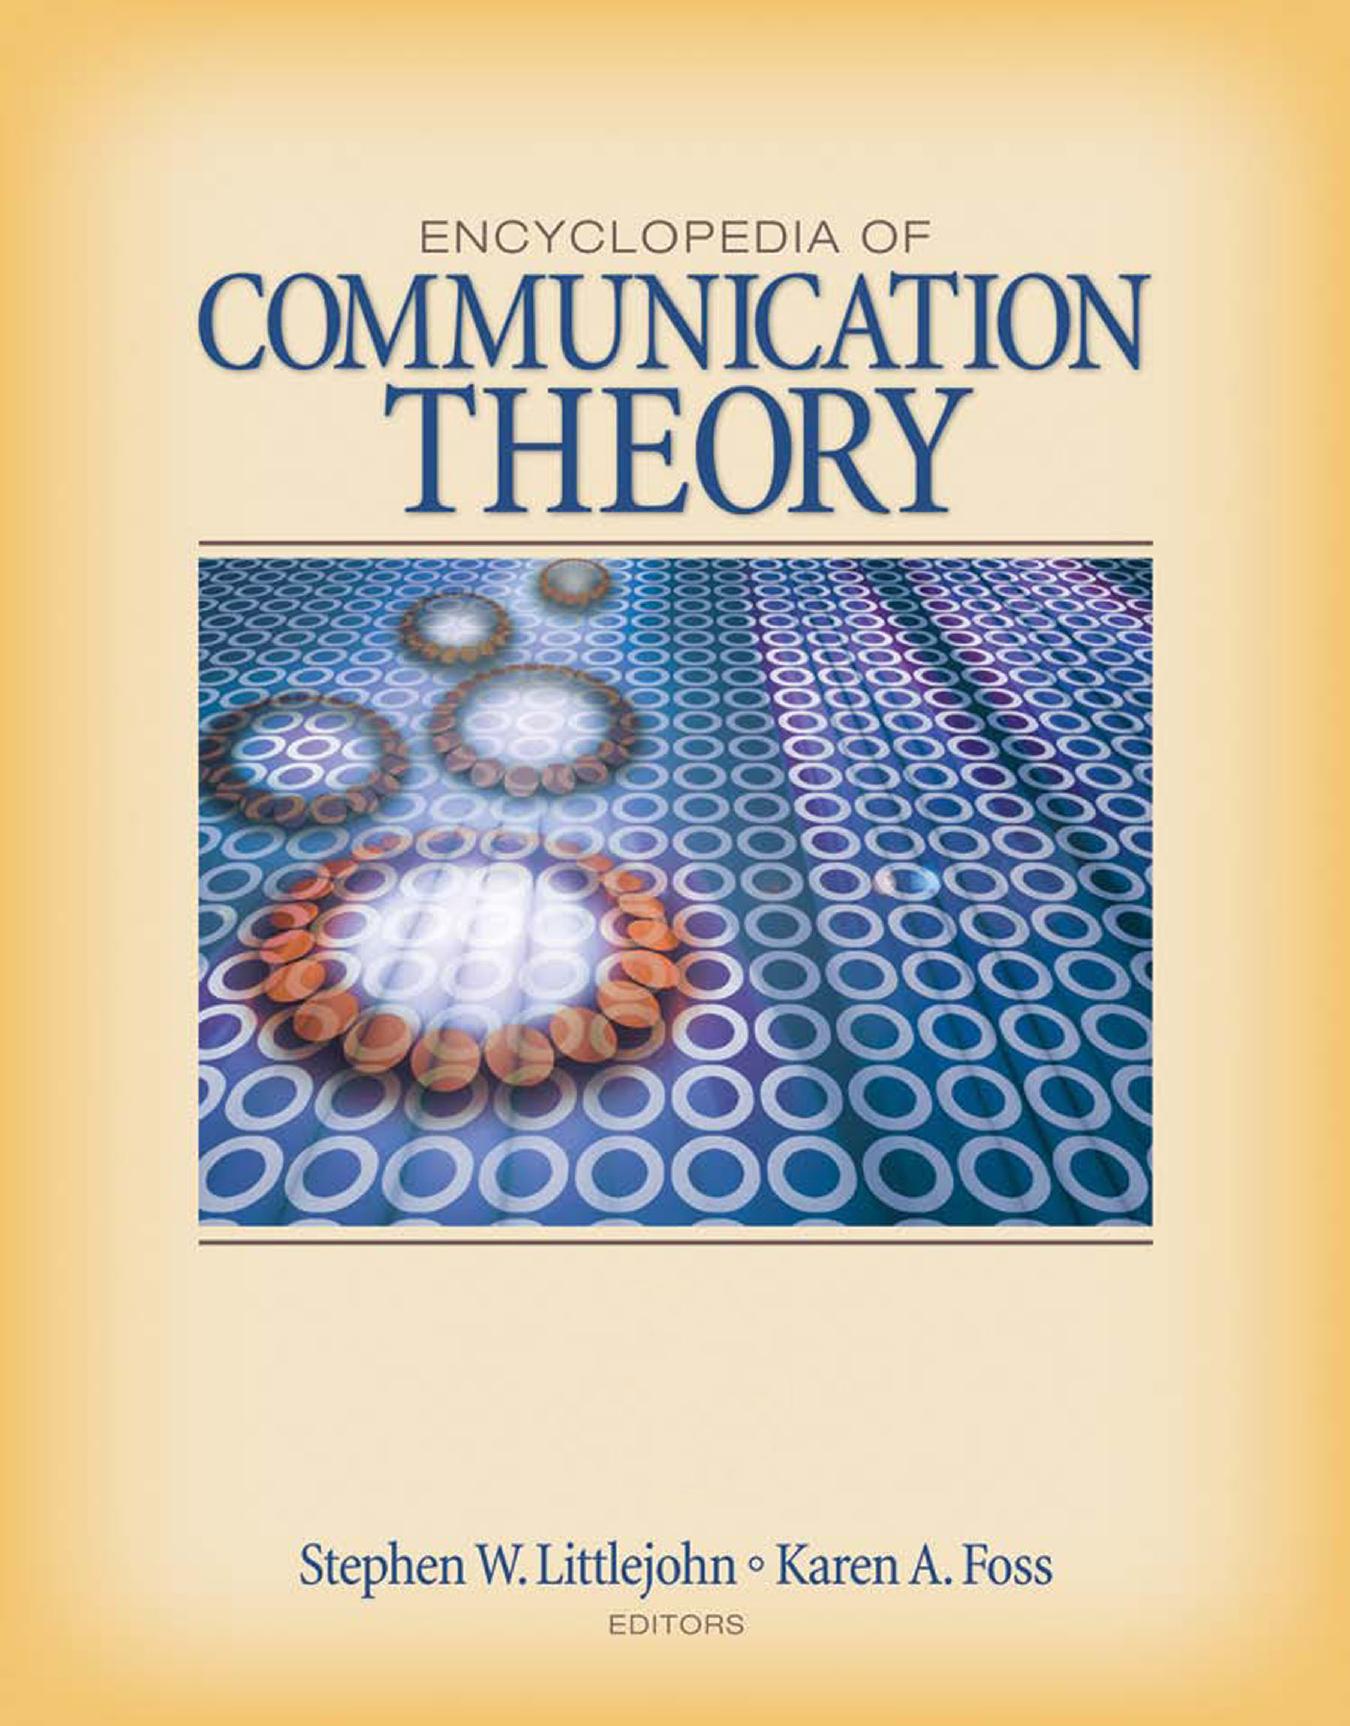 [Stephen W Littlejohn] Encyclopedia of communicati 2009